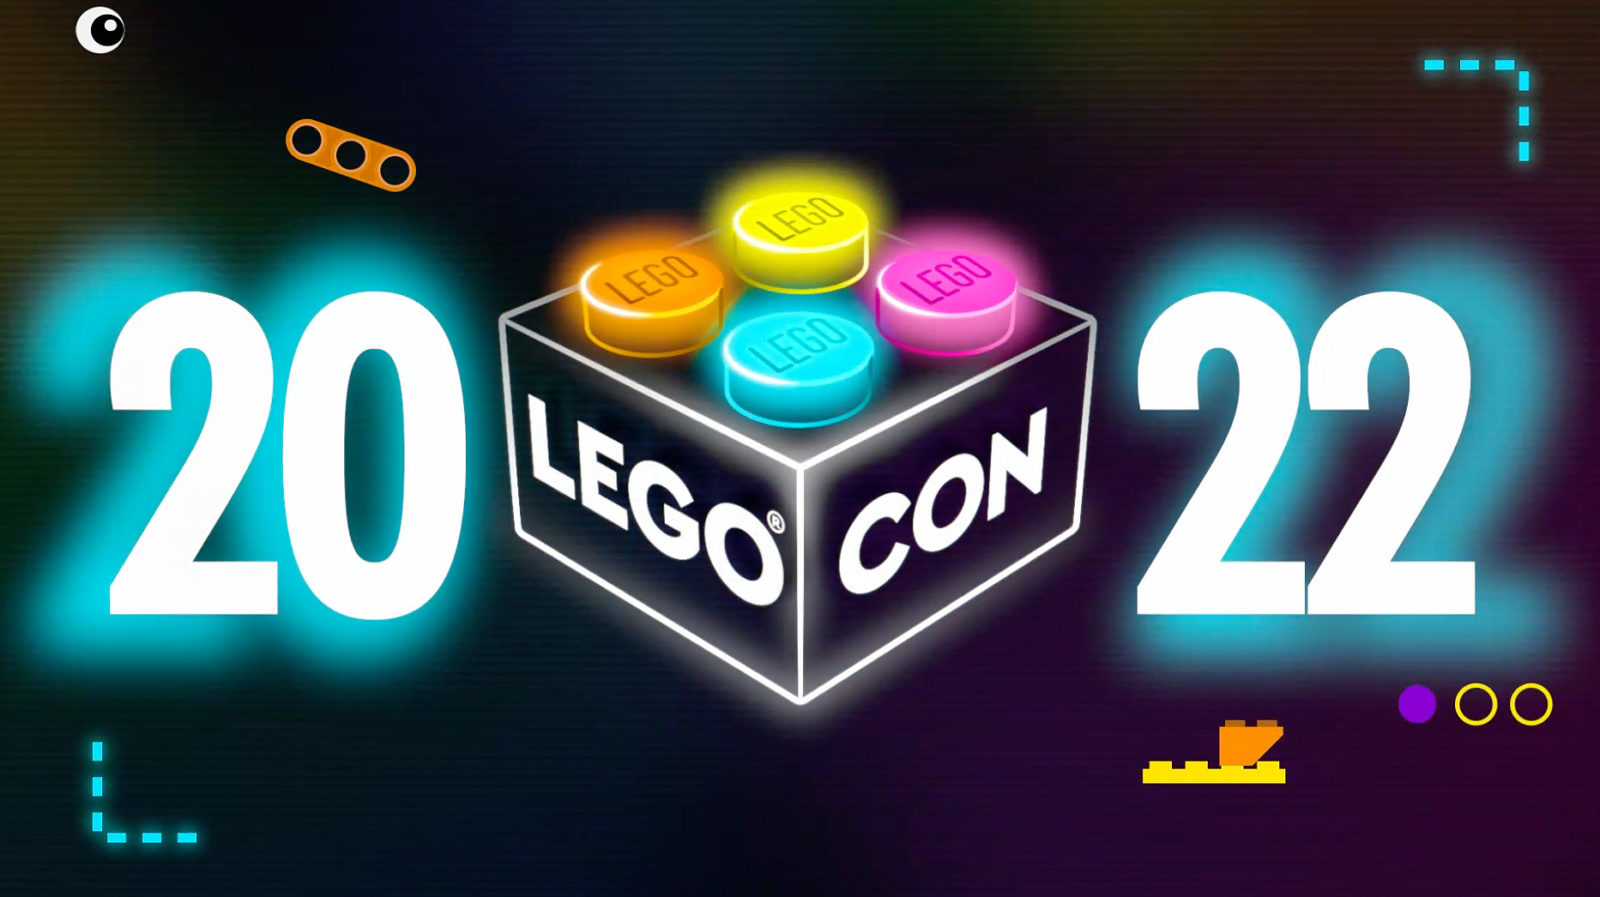 LEGO CON 2022: Konwencja LEGO Online powraca 18 czerwca 2022 r